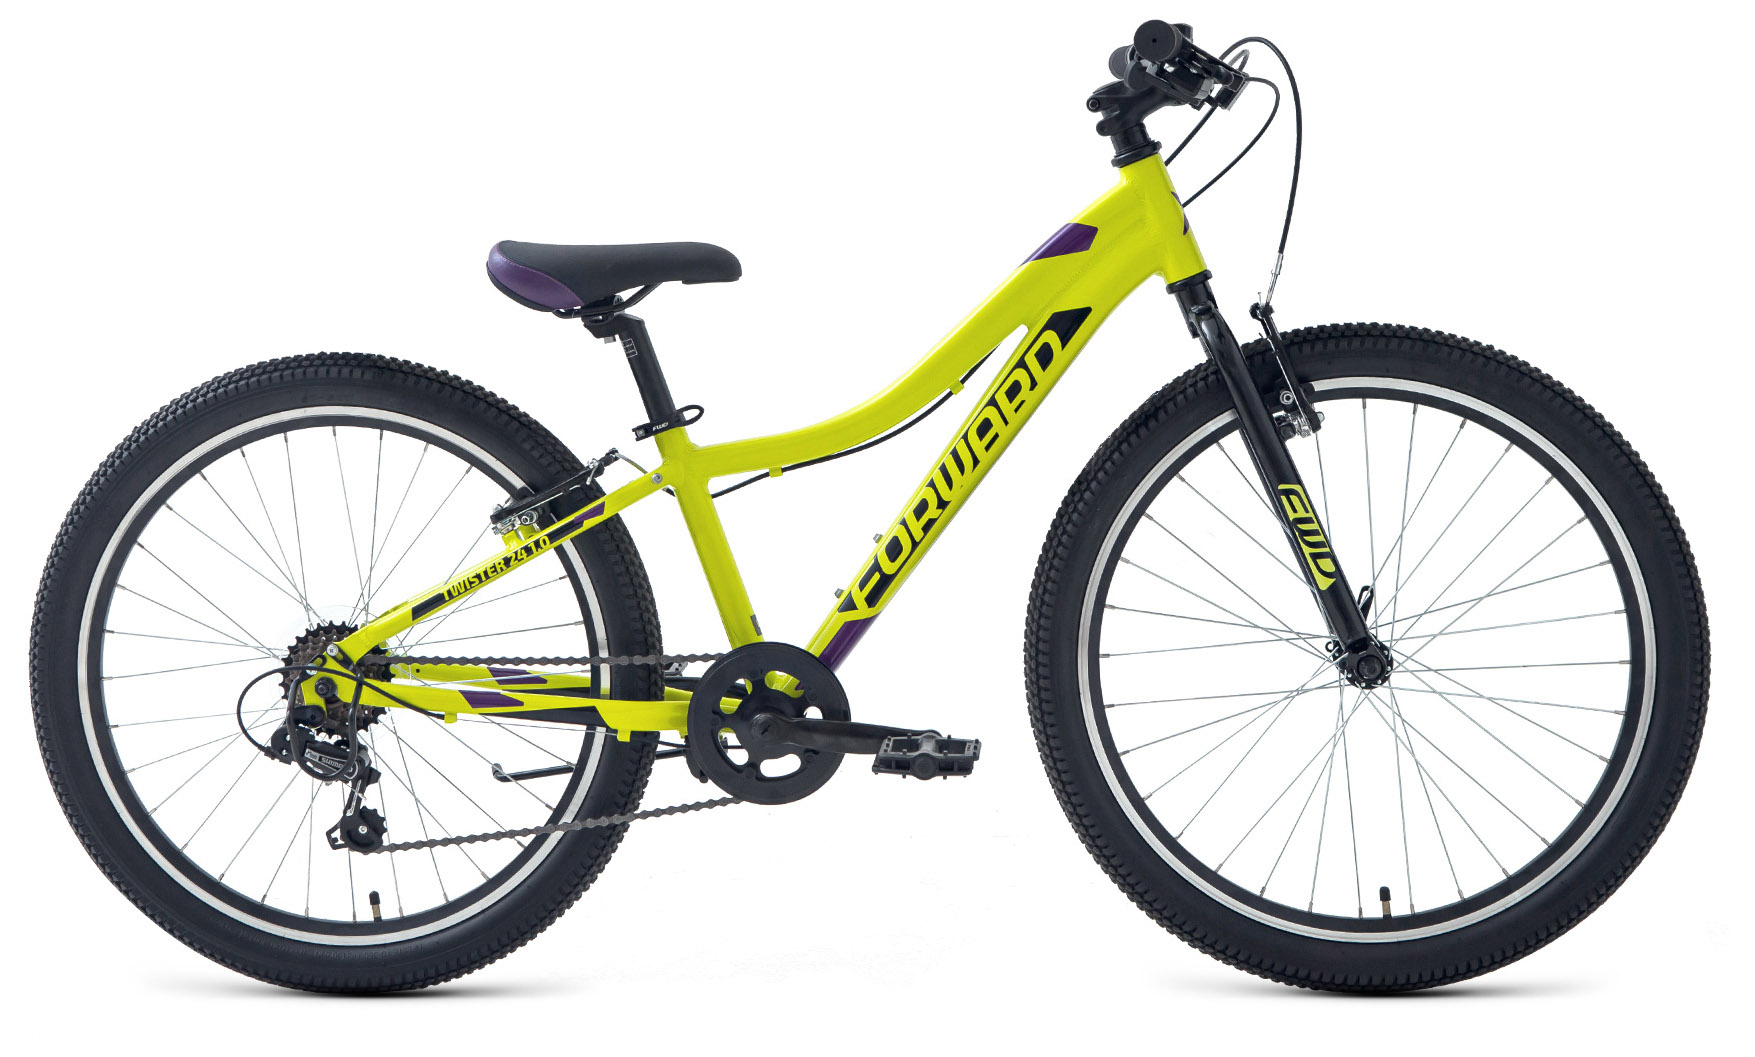  Отзывы о Детском велосипеде Forward Twister 24 1.0 2021